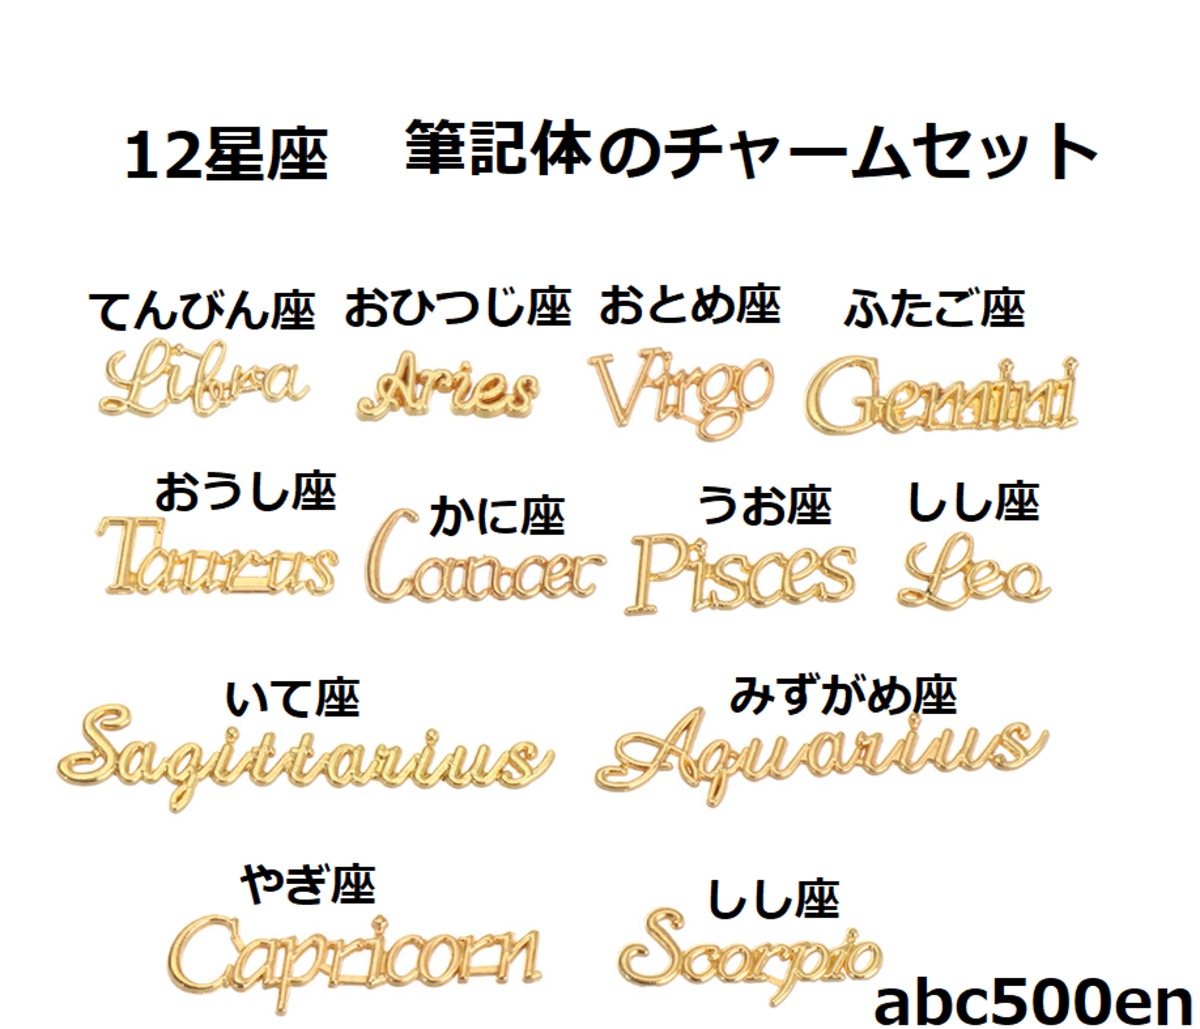 十二星座オレンジグラス ハンドメイド 人気の商品 7111円